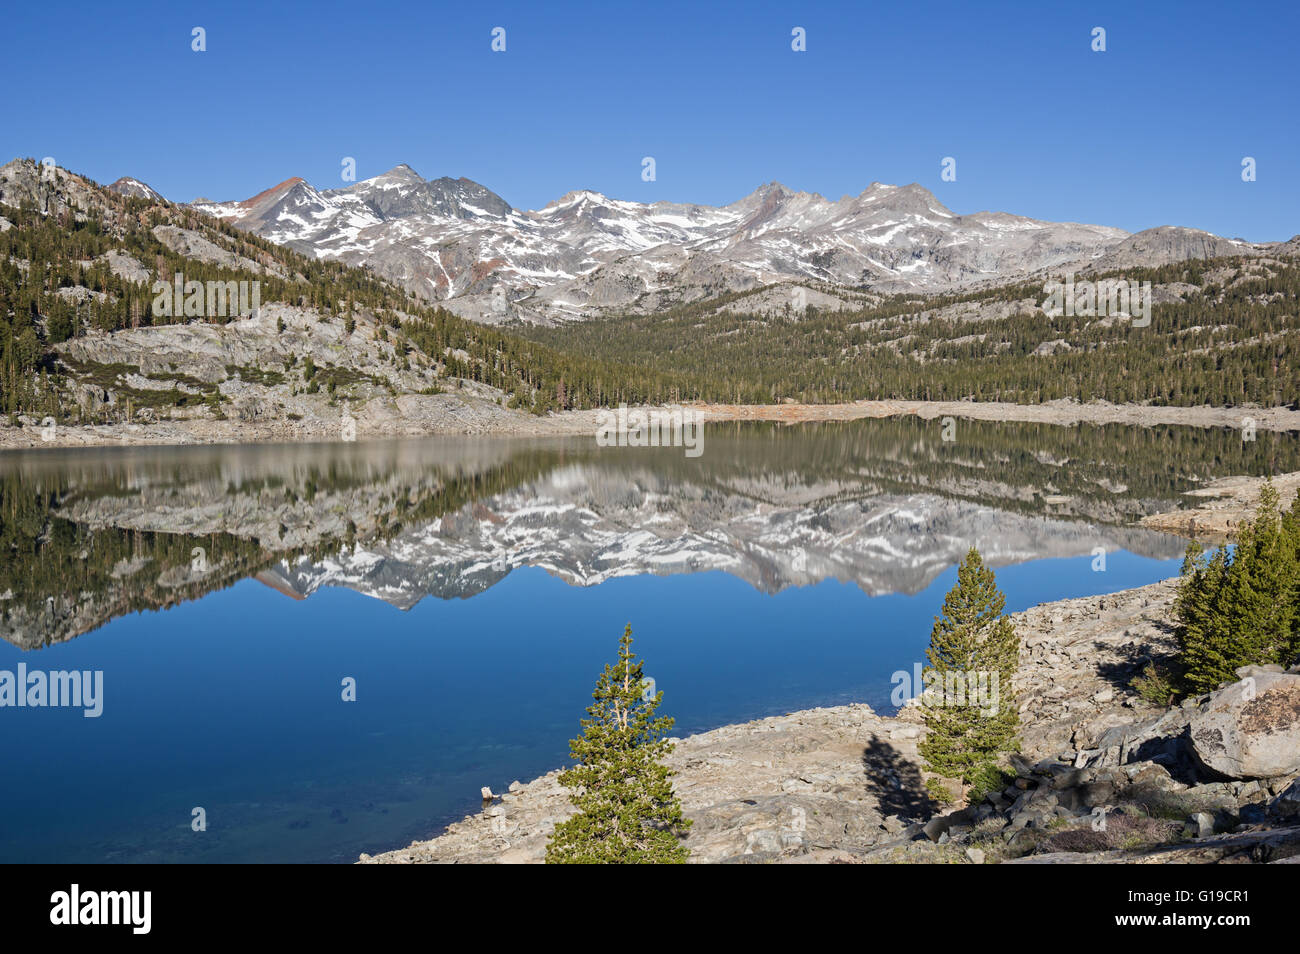 Reflet de la montagne dans la région de Waugh Lac avec un faible niveau d'eau en raison de la sécheresse en Californie Banque D'Images